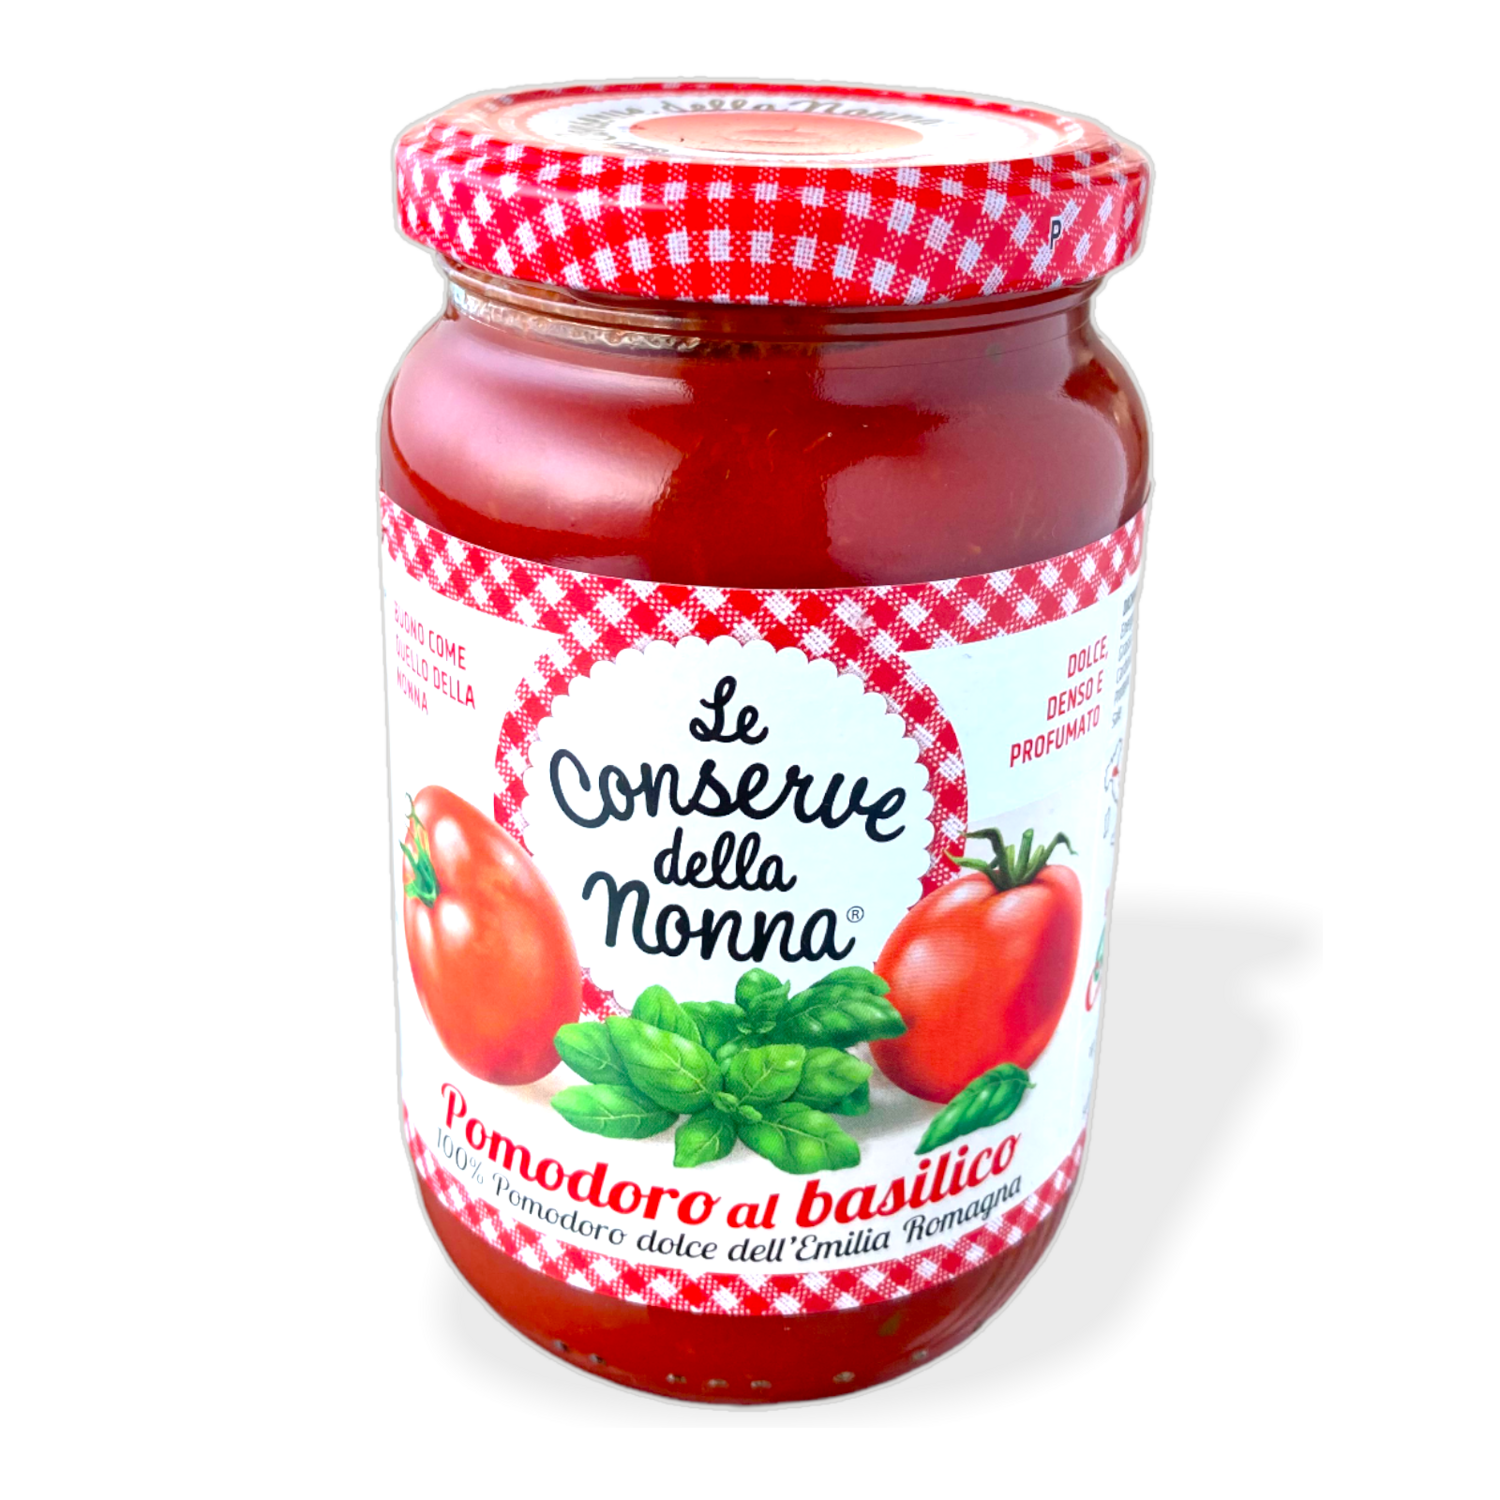 Pomodoro Al Basilico.
Le Conserve Della nonna 100% pomodoro dolce dell' Emilia Romagna.
350g.